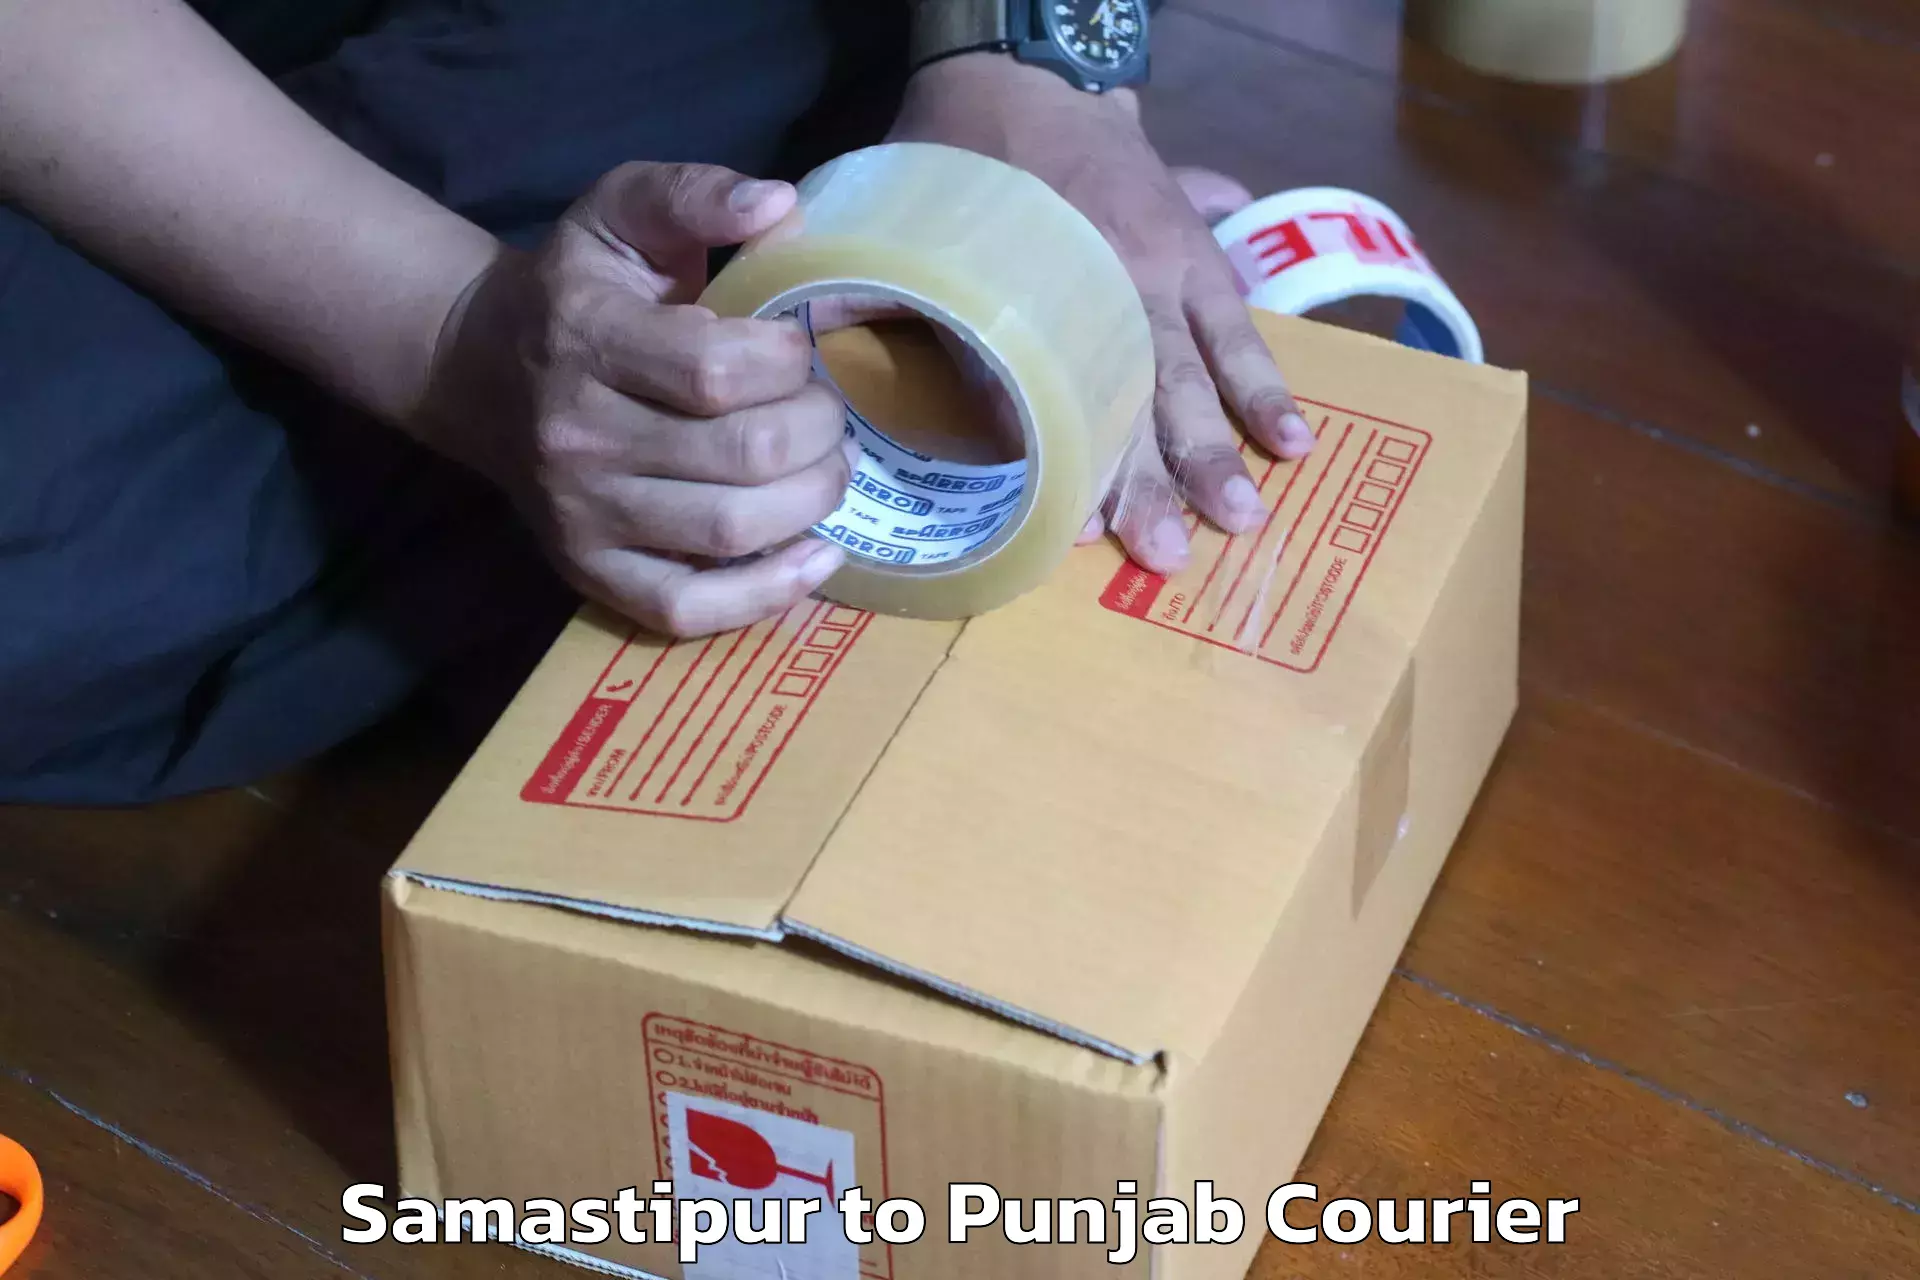 Furniture transport experts Samastipur to Punjab